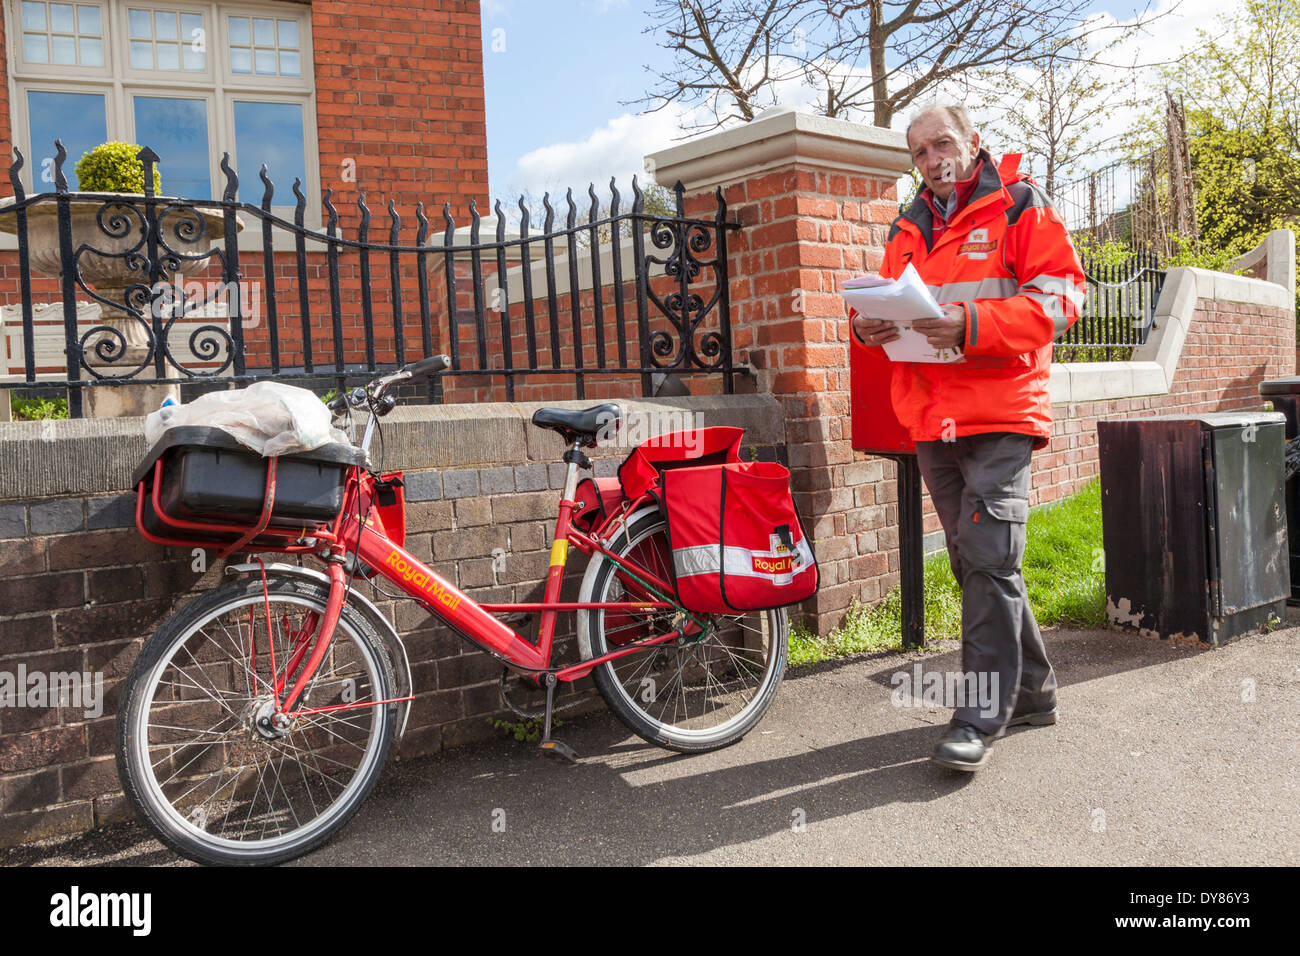 Royal Mail postman avec location offrir dans le village de Plumtree, Lancashire, England, UK Banque D'Images